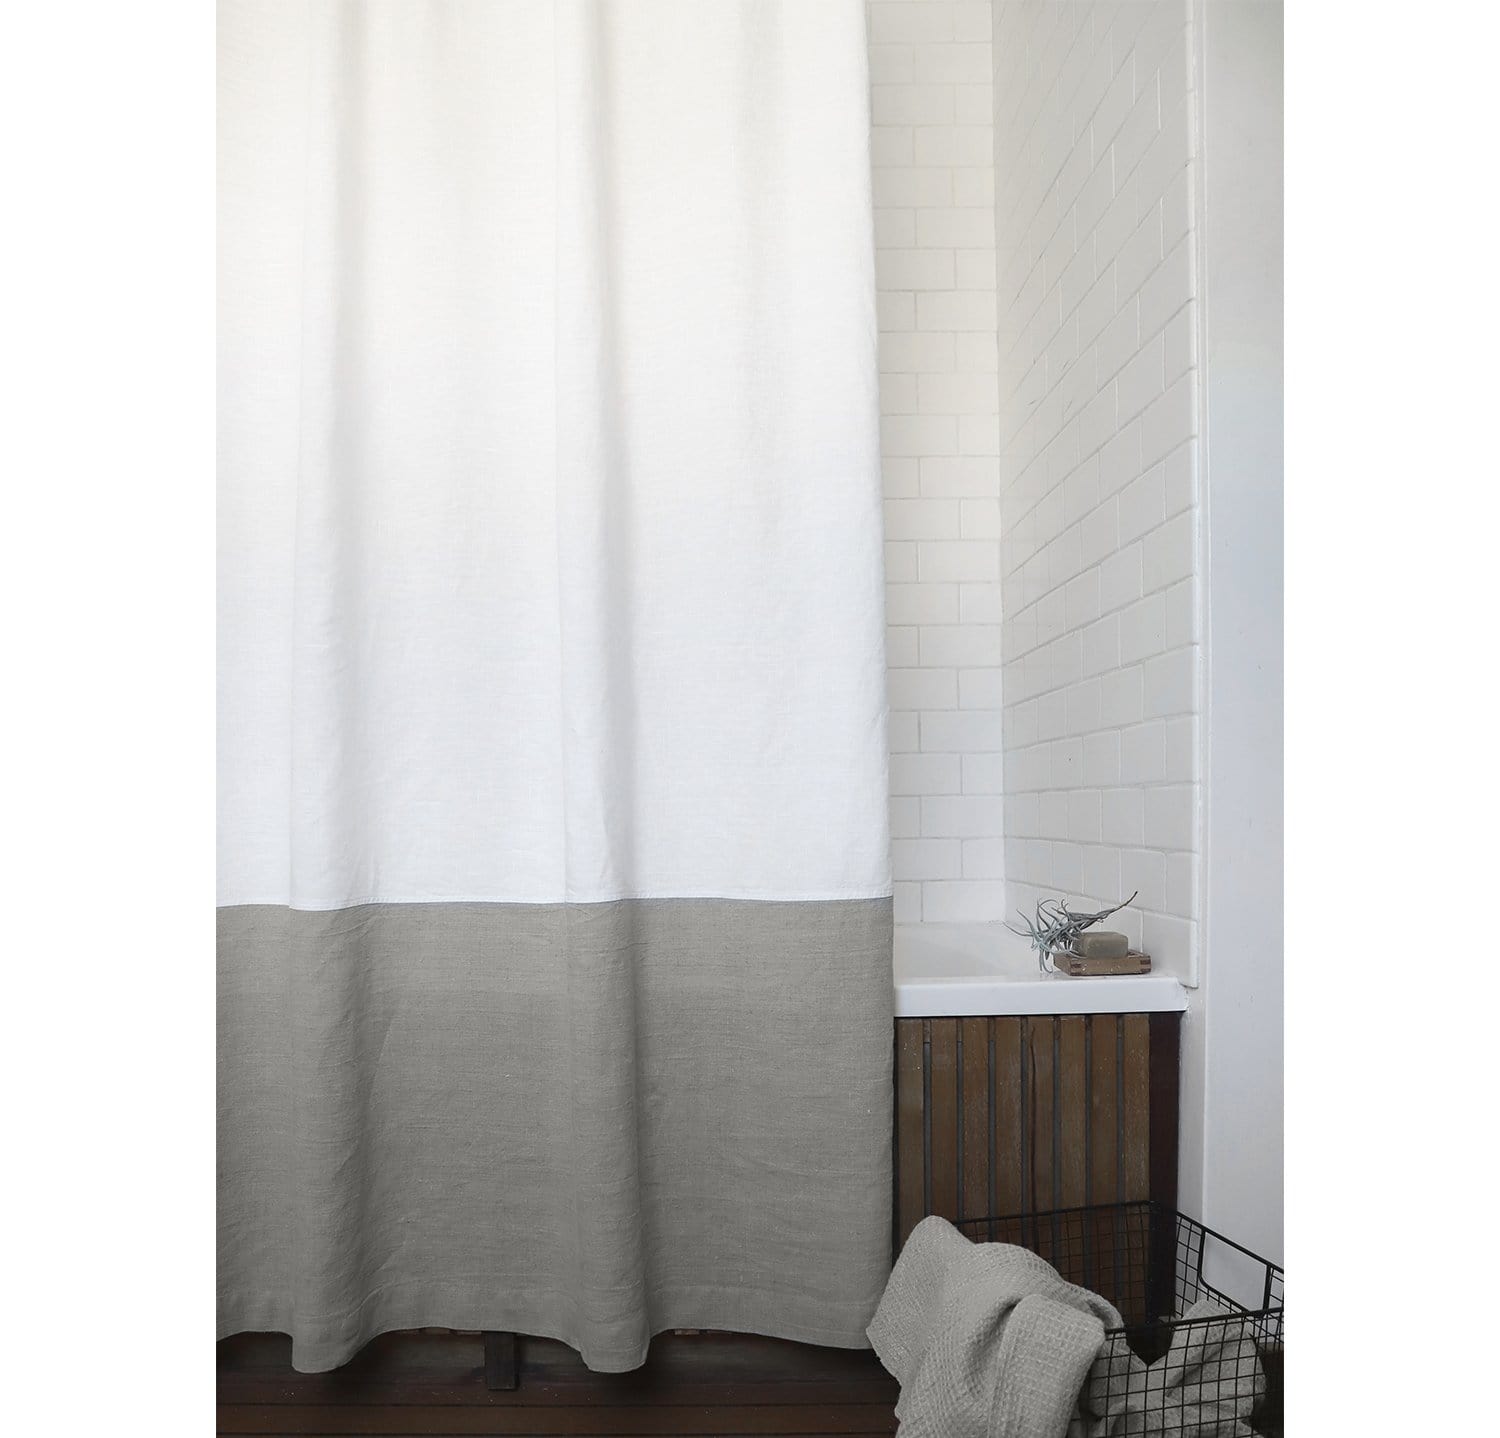 bathroom shower curtain ideas pinterest